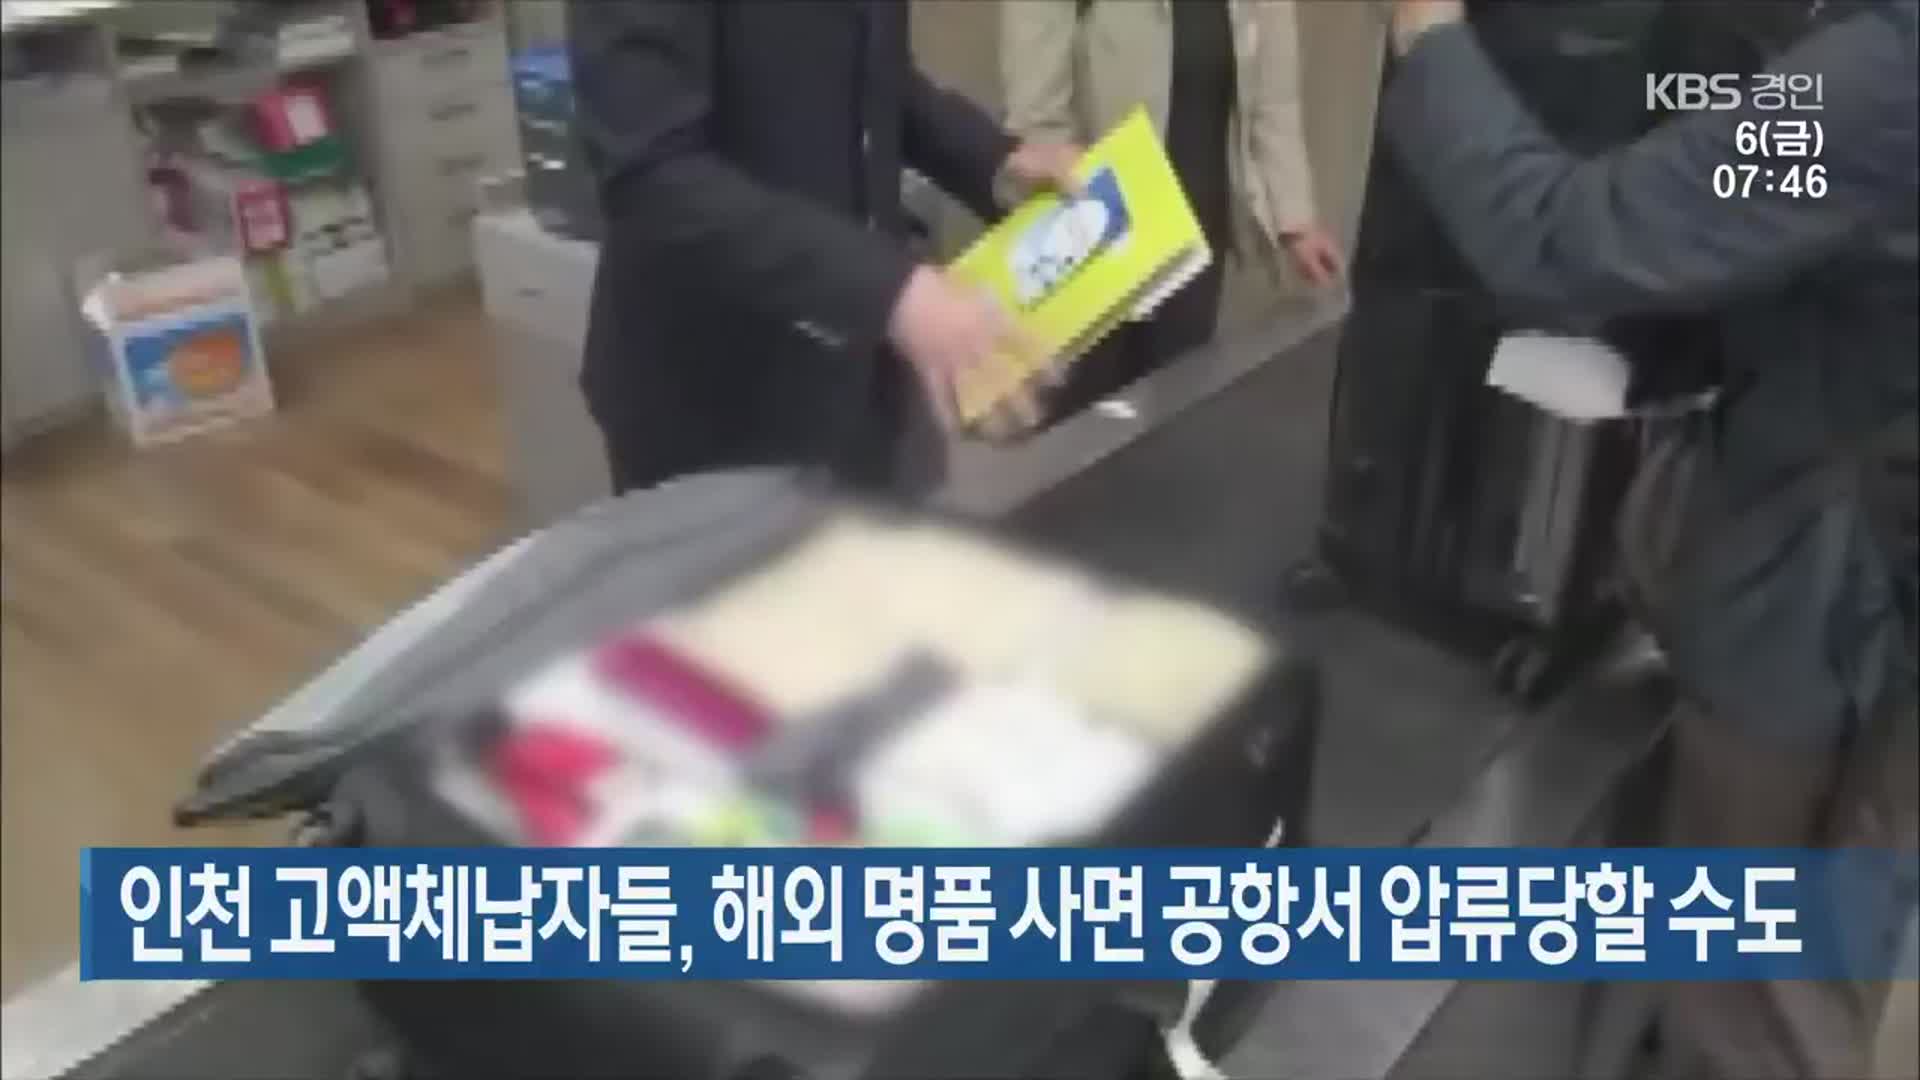 인천 고액체납자들, 해외 명품 사면 공항서 압류당할 수도